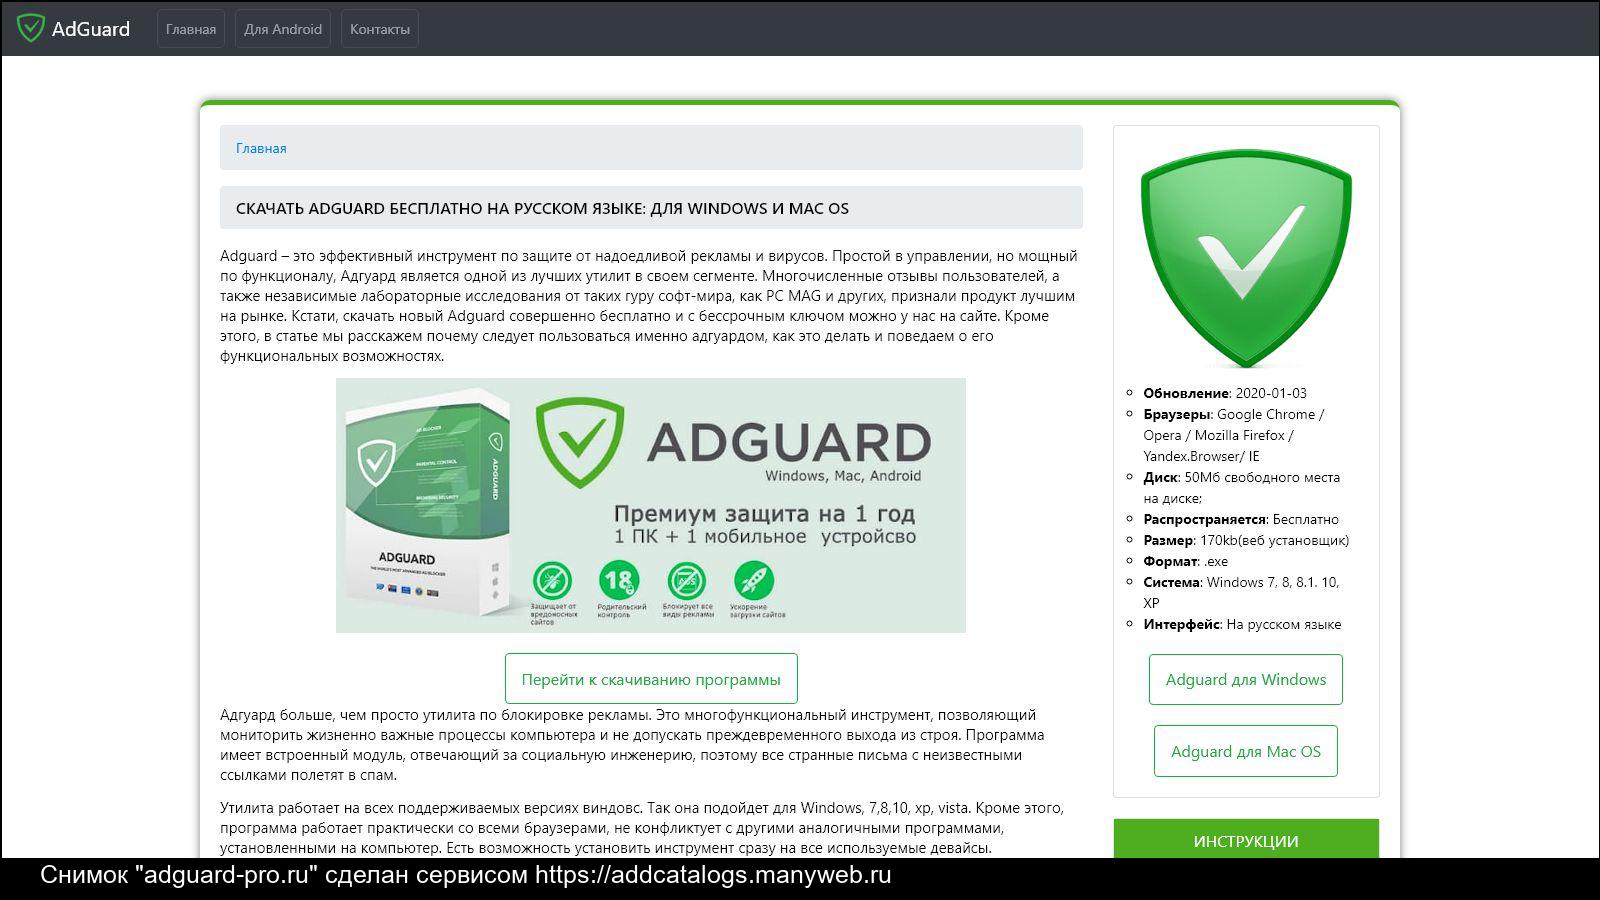 Программа Adguard предназначена для полной блокировки рекламы, Adguard заблокирует все типы рекламы в интернете и в программах на вашем компьютере